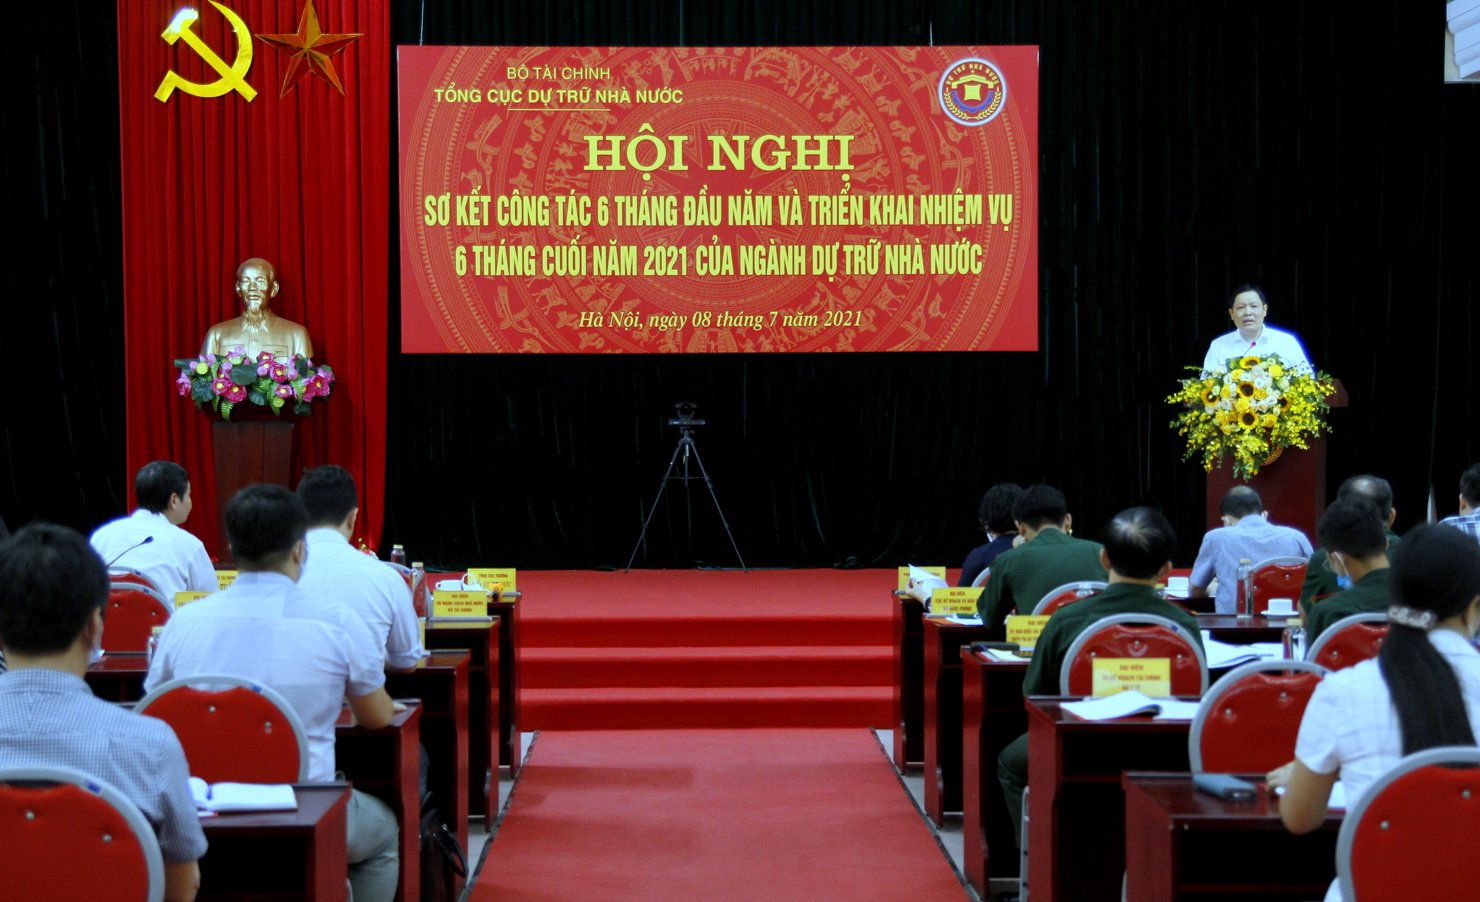 Tổng cục trưởng Tổng cục Dự trữ Nhà nước Đỗ Việt Đức phát biểu tại Hội nghị sơ kết 6 tháng đầu năm và triển khai nhiệm vụ 6 tháng cuối năm của ngành Dự trữ Nhà nước.